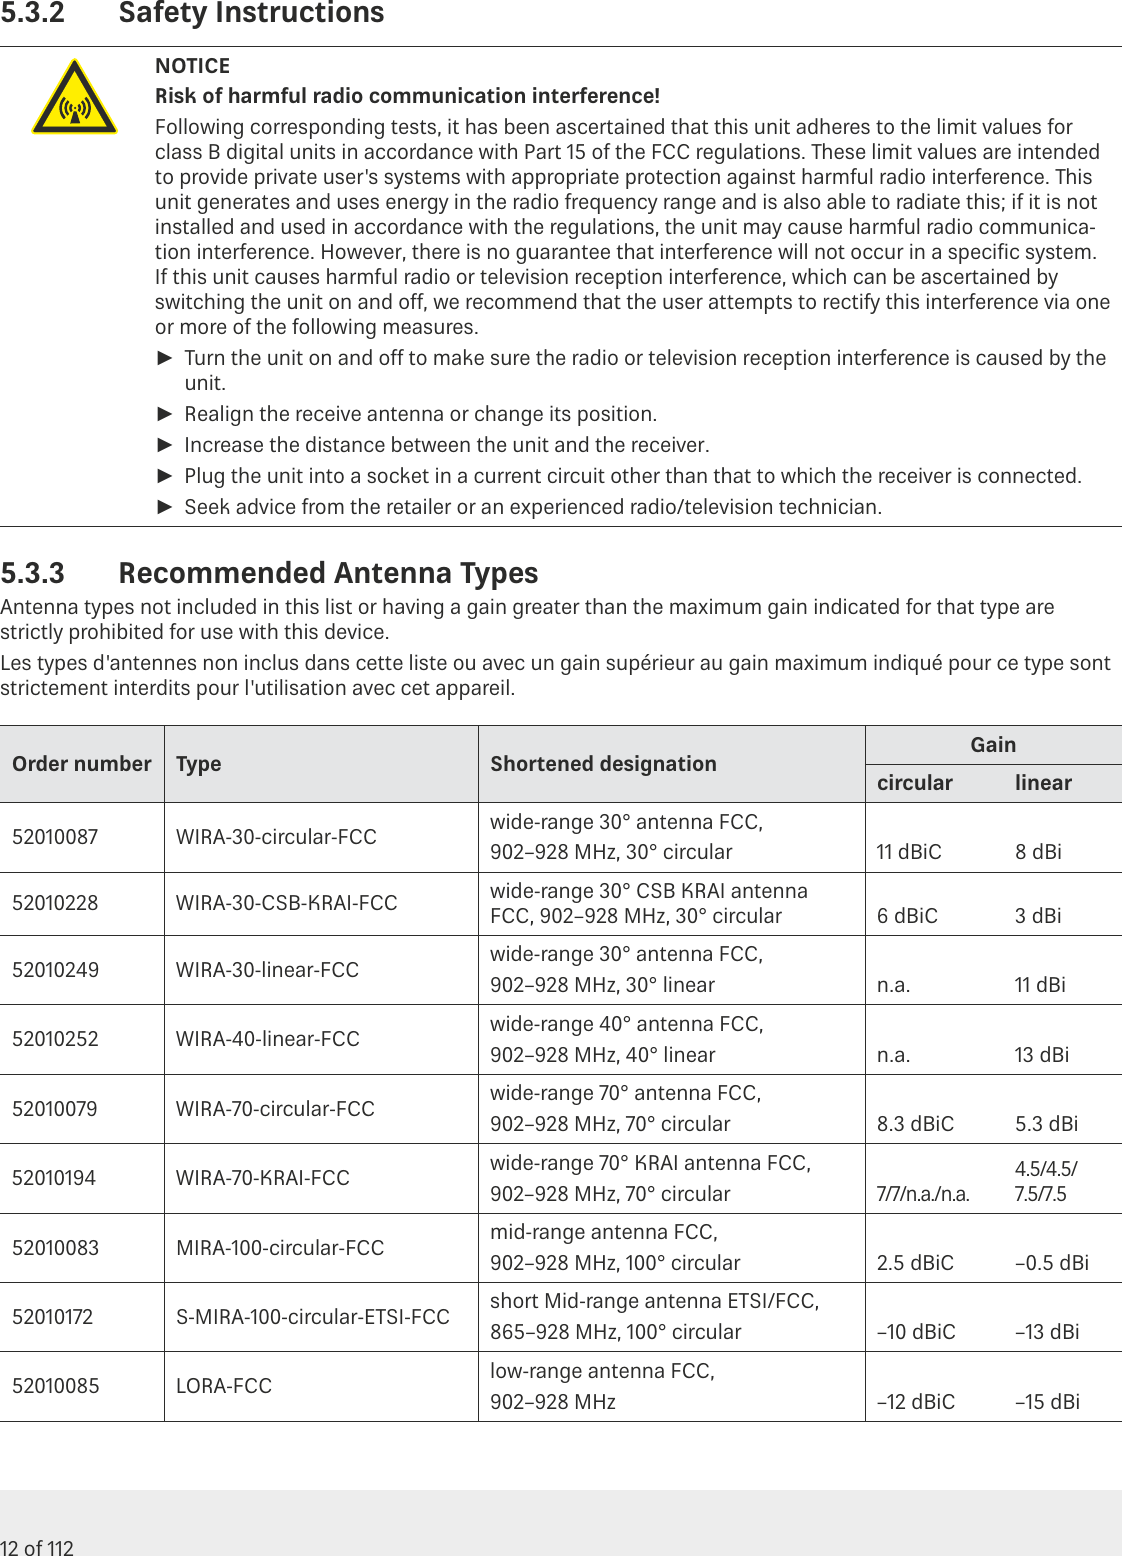 Page 12 of KATHREIN Sachsen RRU4560 Part 15 Spread Spectrum Transmitter User Manual 